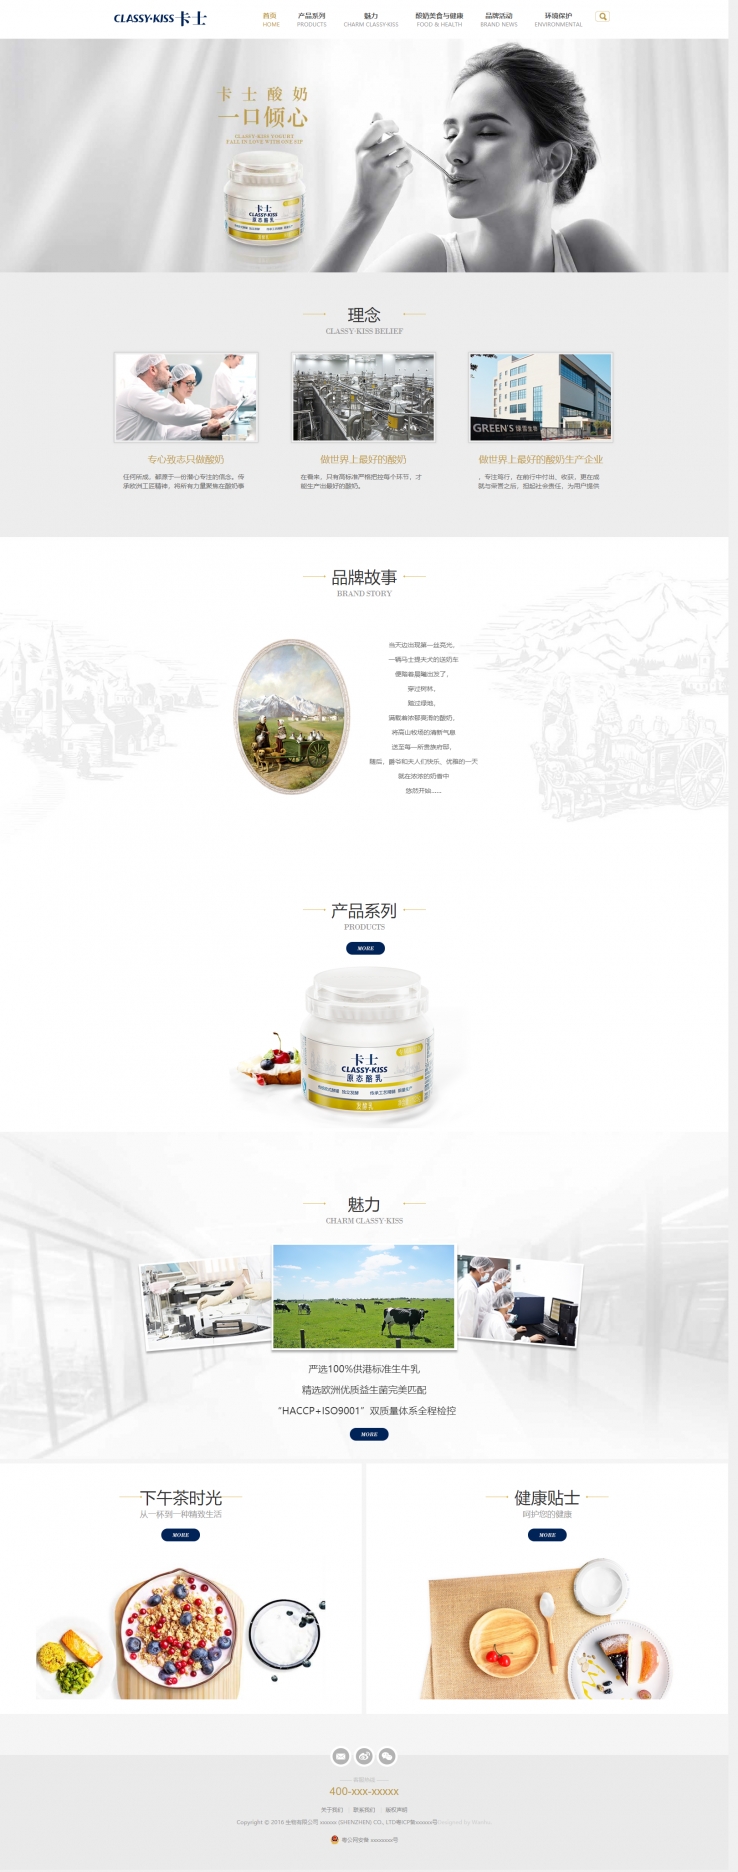 黄色简洁风格的酸奶制品企业网站源码下载